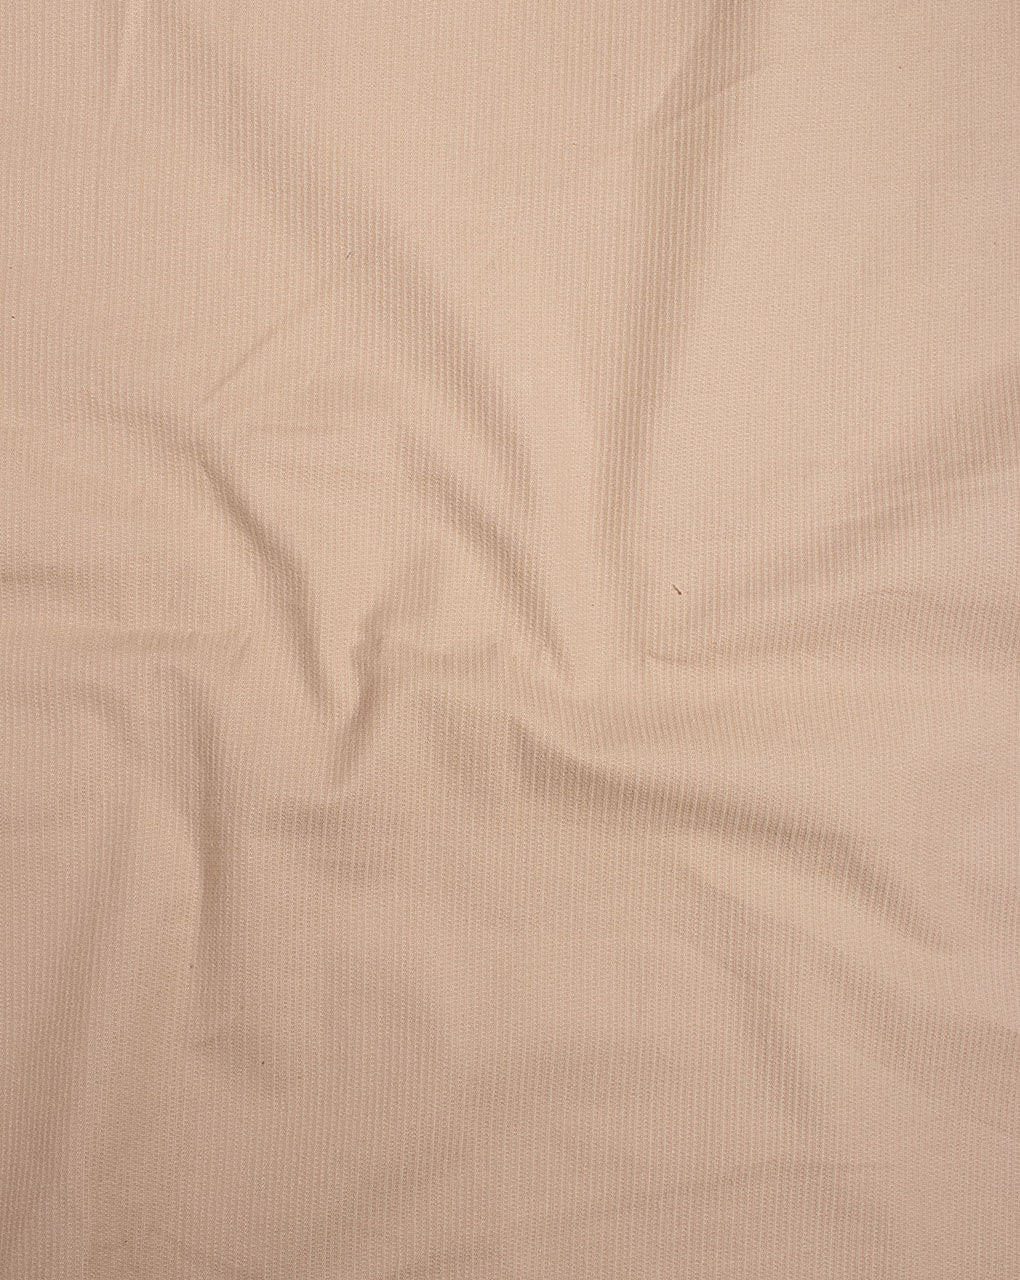 Beige Plain Cotton Corduroy Fabric ( 14 Wales )